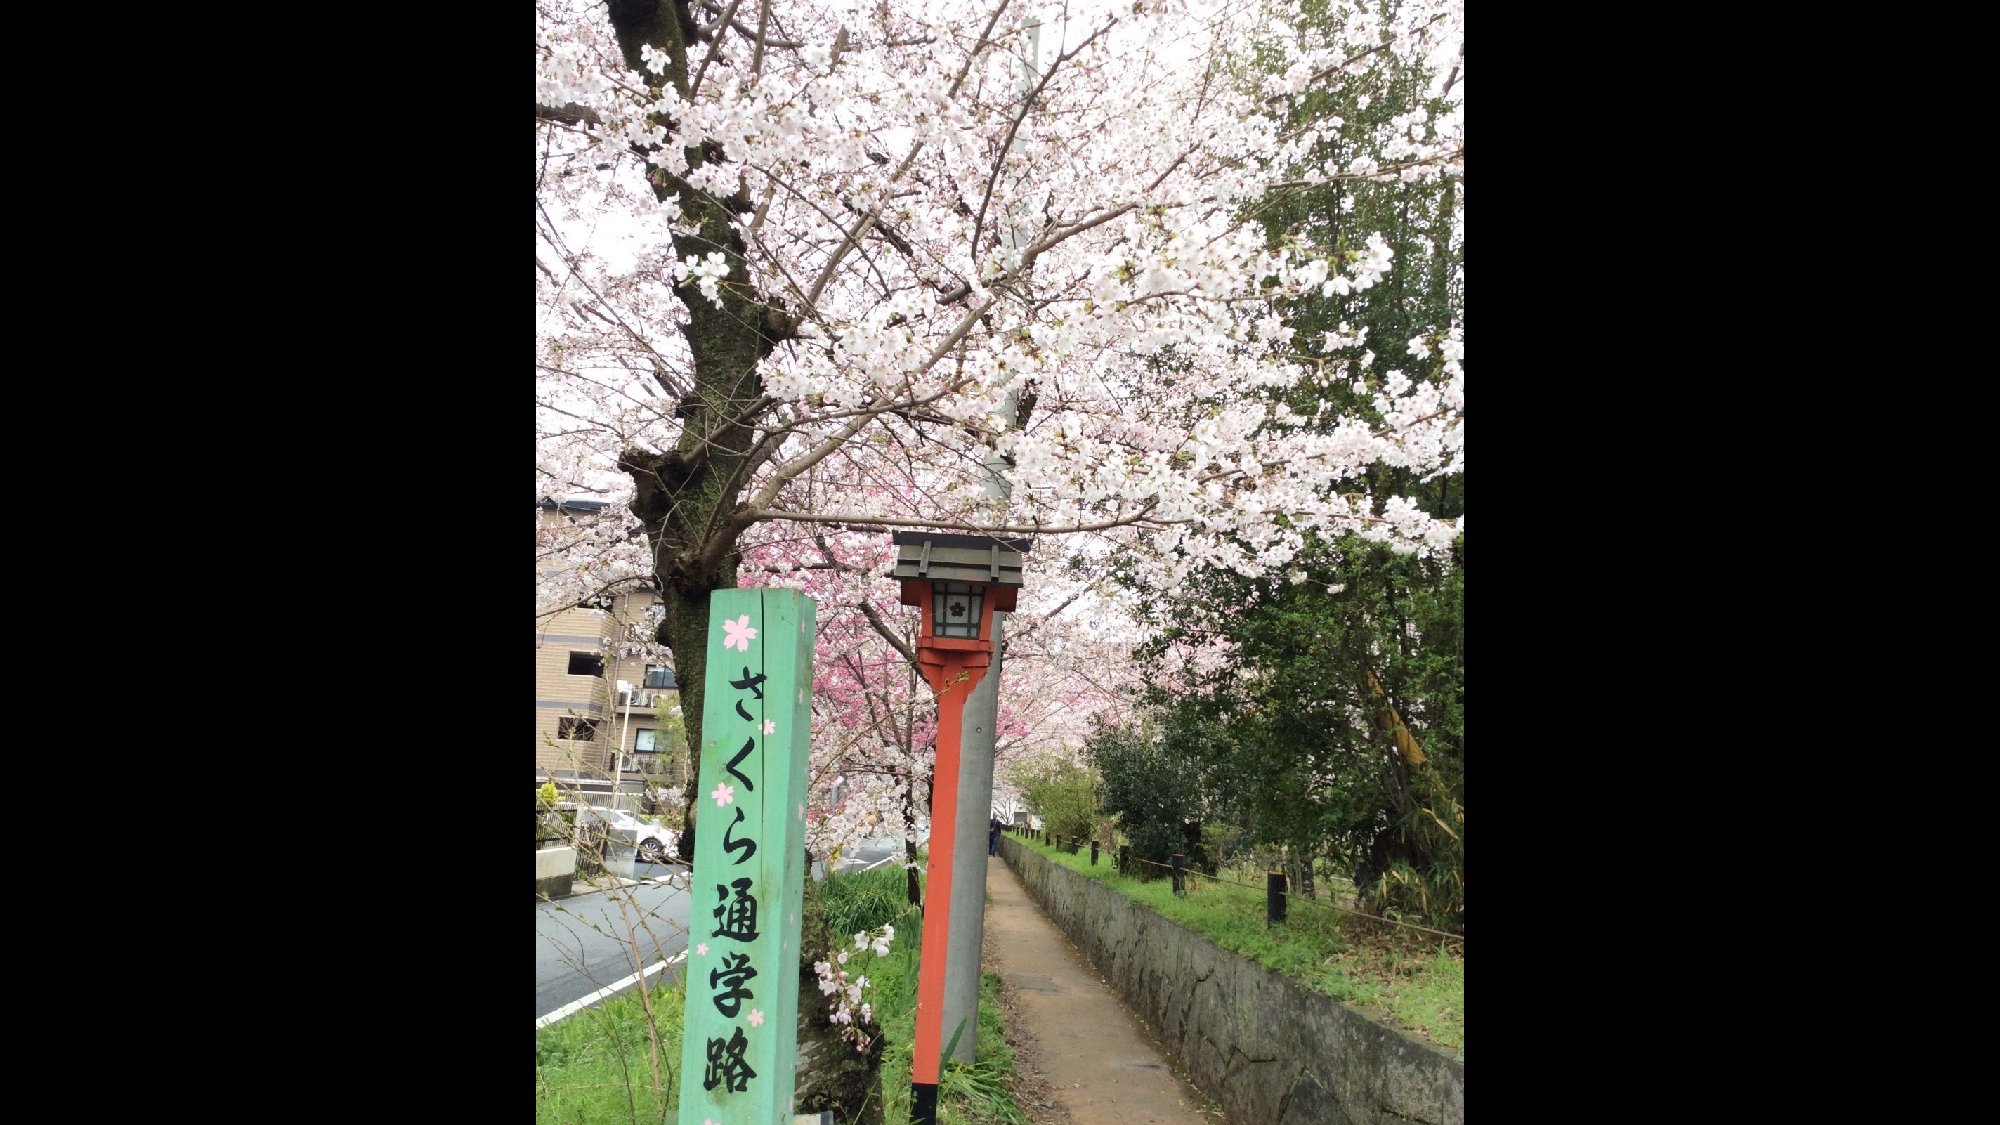 ・さくら通学路を散策して京都の春を感じてみてはいかがでしょうか